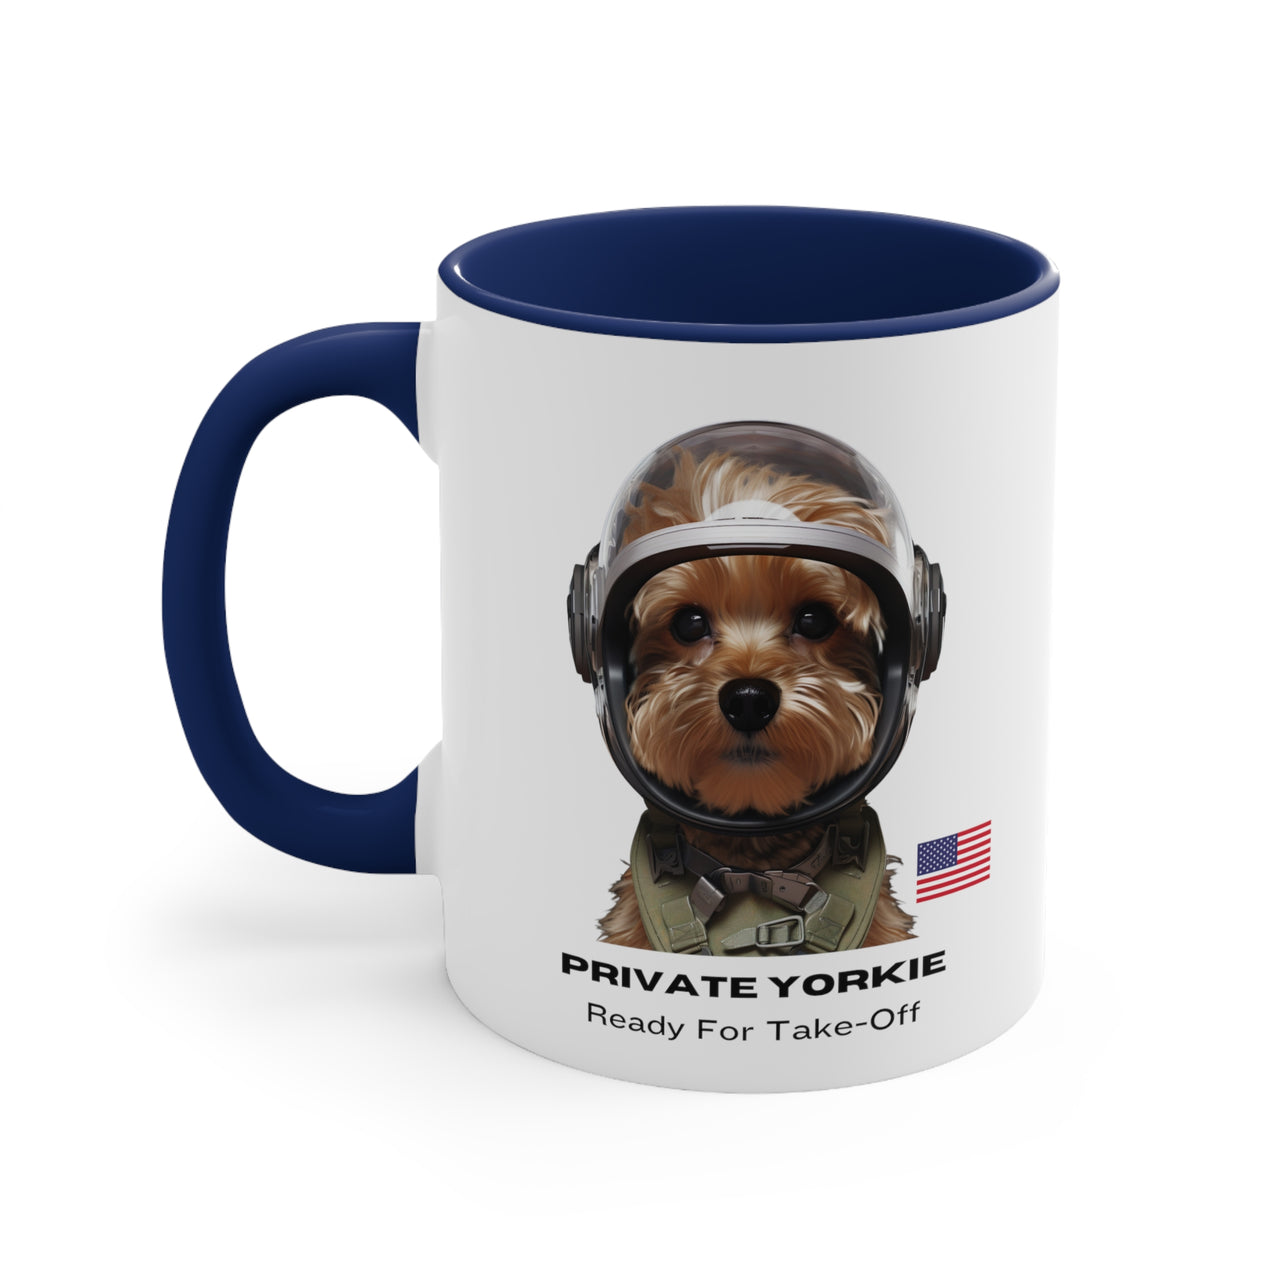 Private Yorkie Ready For Take-Off Coffee Mug, 11oz